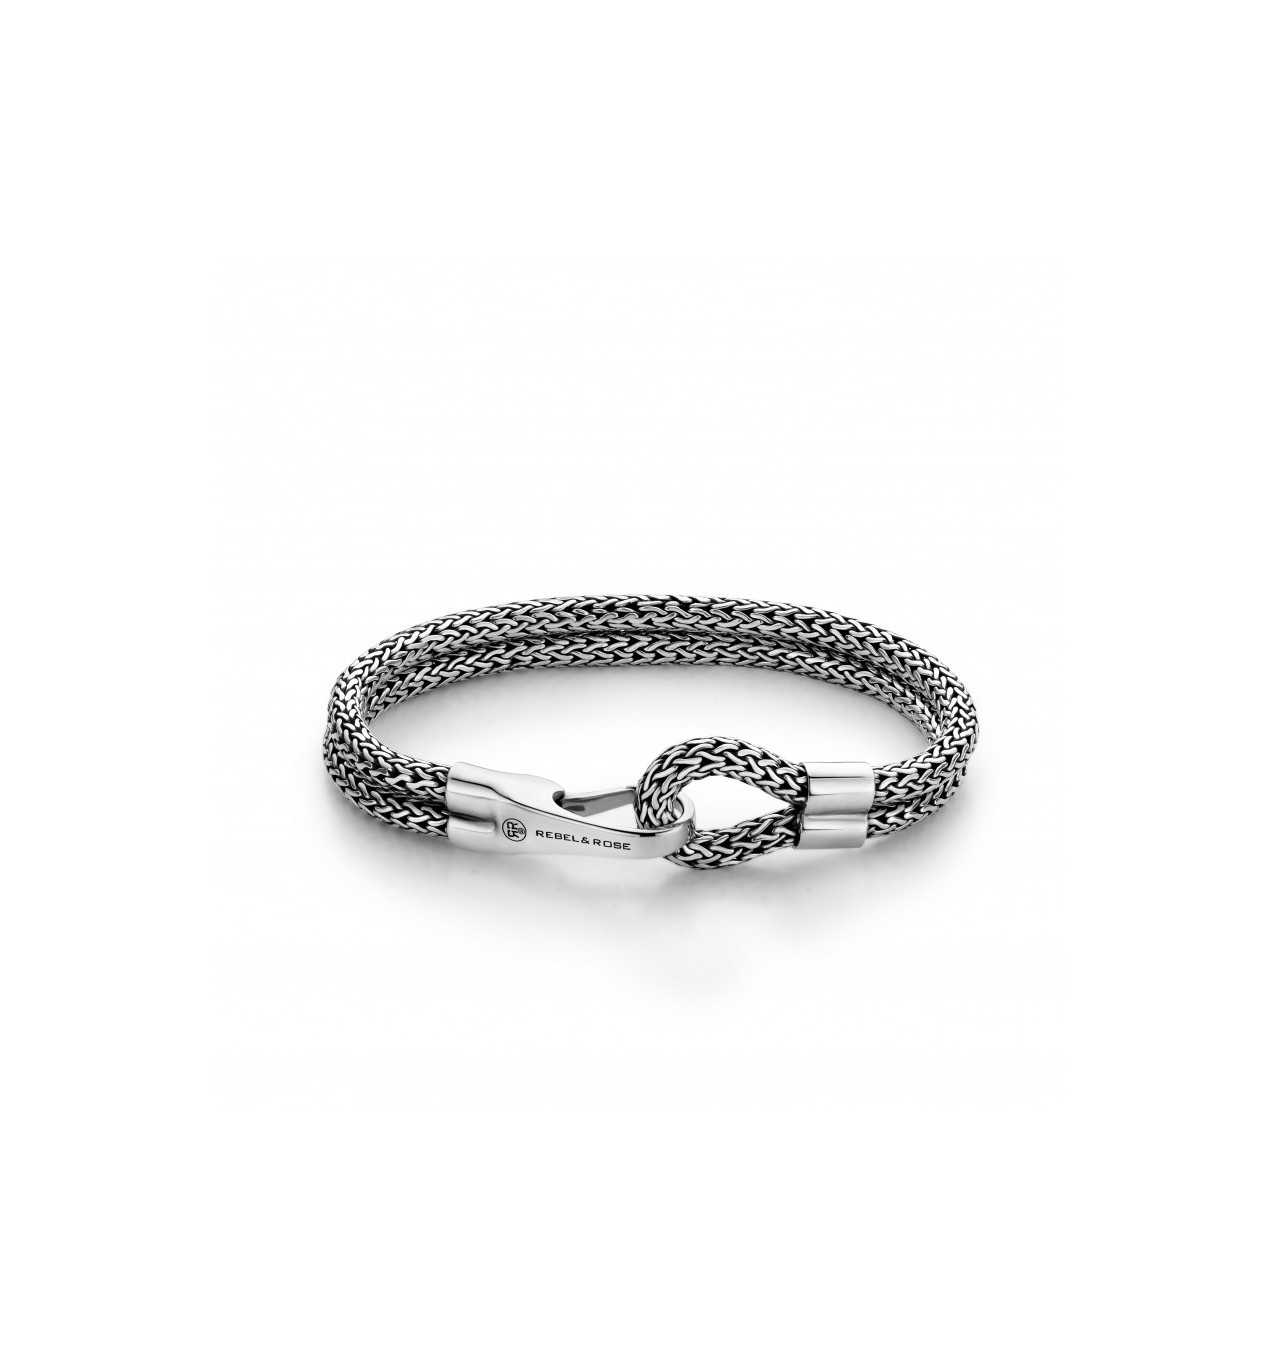 rebel&rose-double hooked-bracelet-argent 925-bijoux-totem.fr